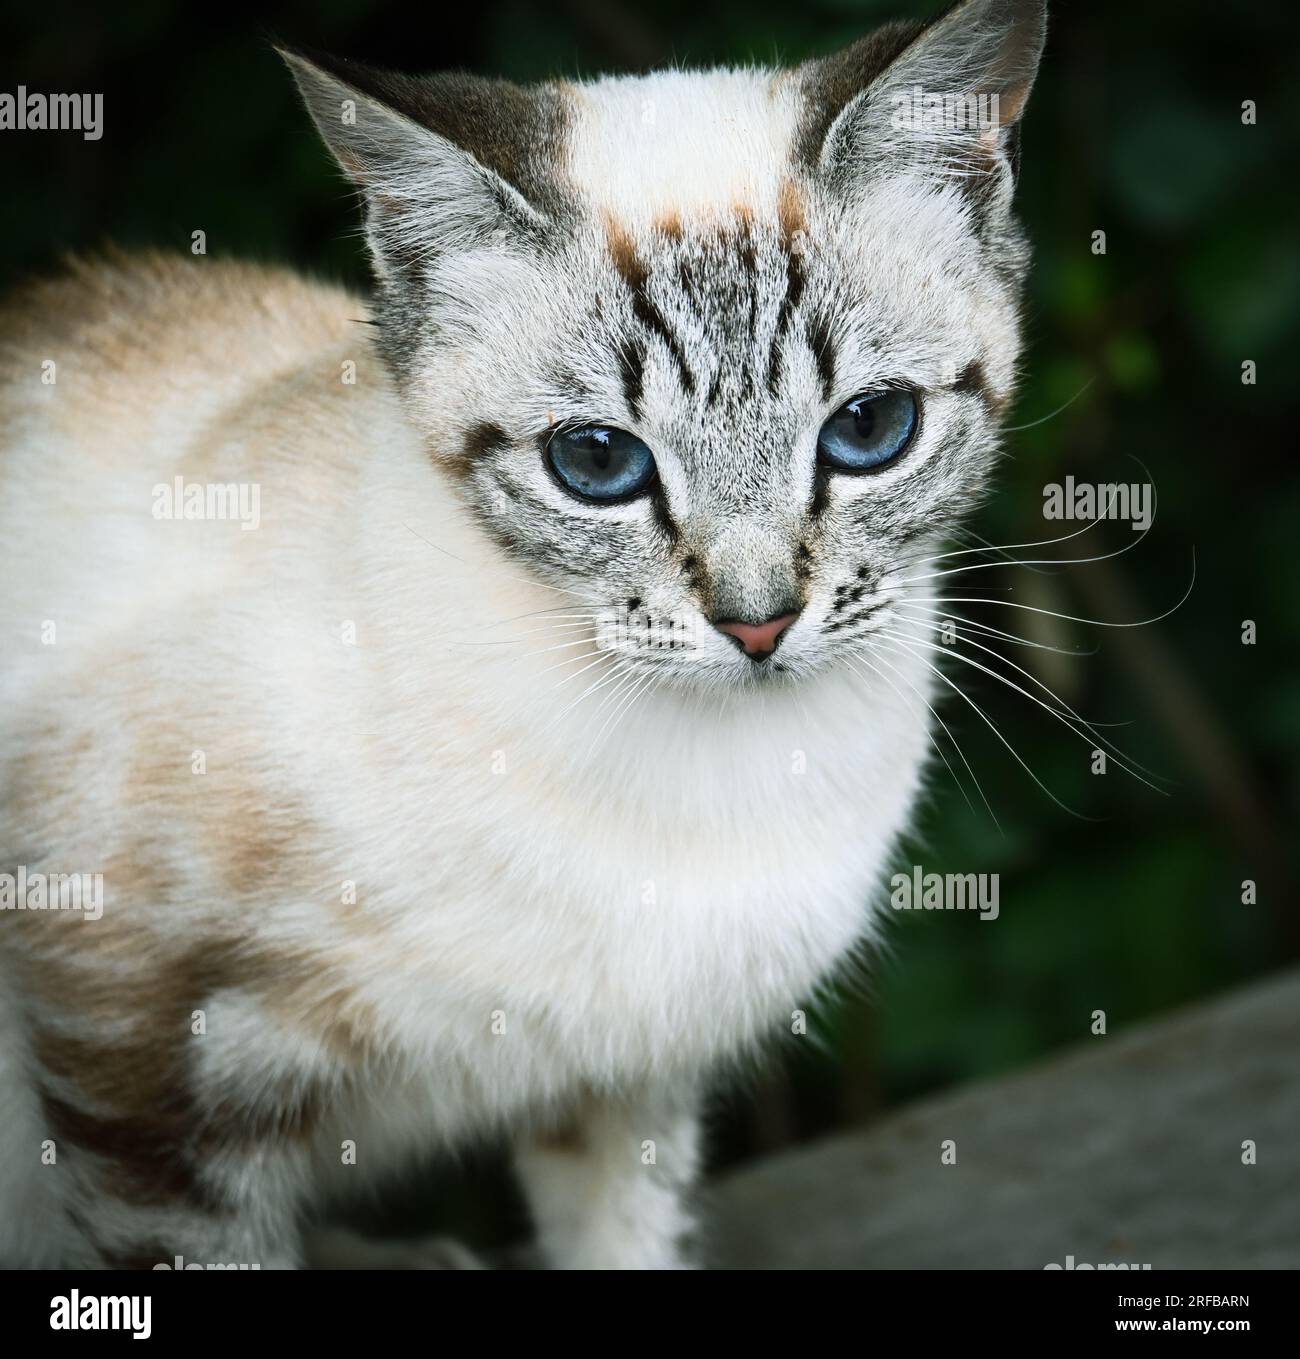 Gros plan de chat blanc avec les yeux bleus Banque D'Images